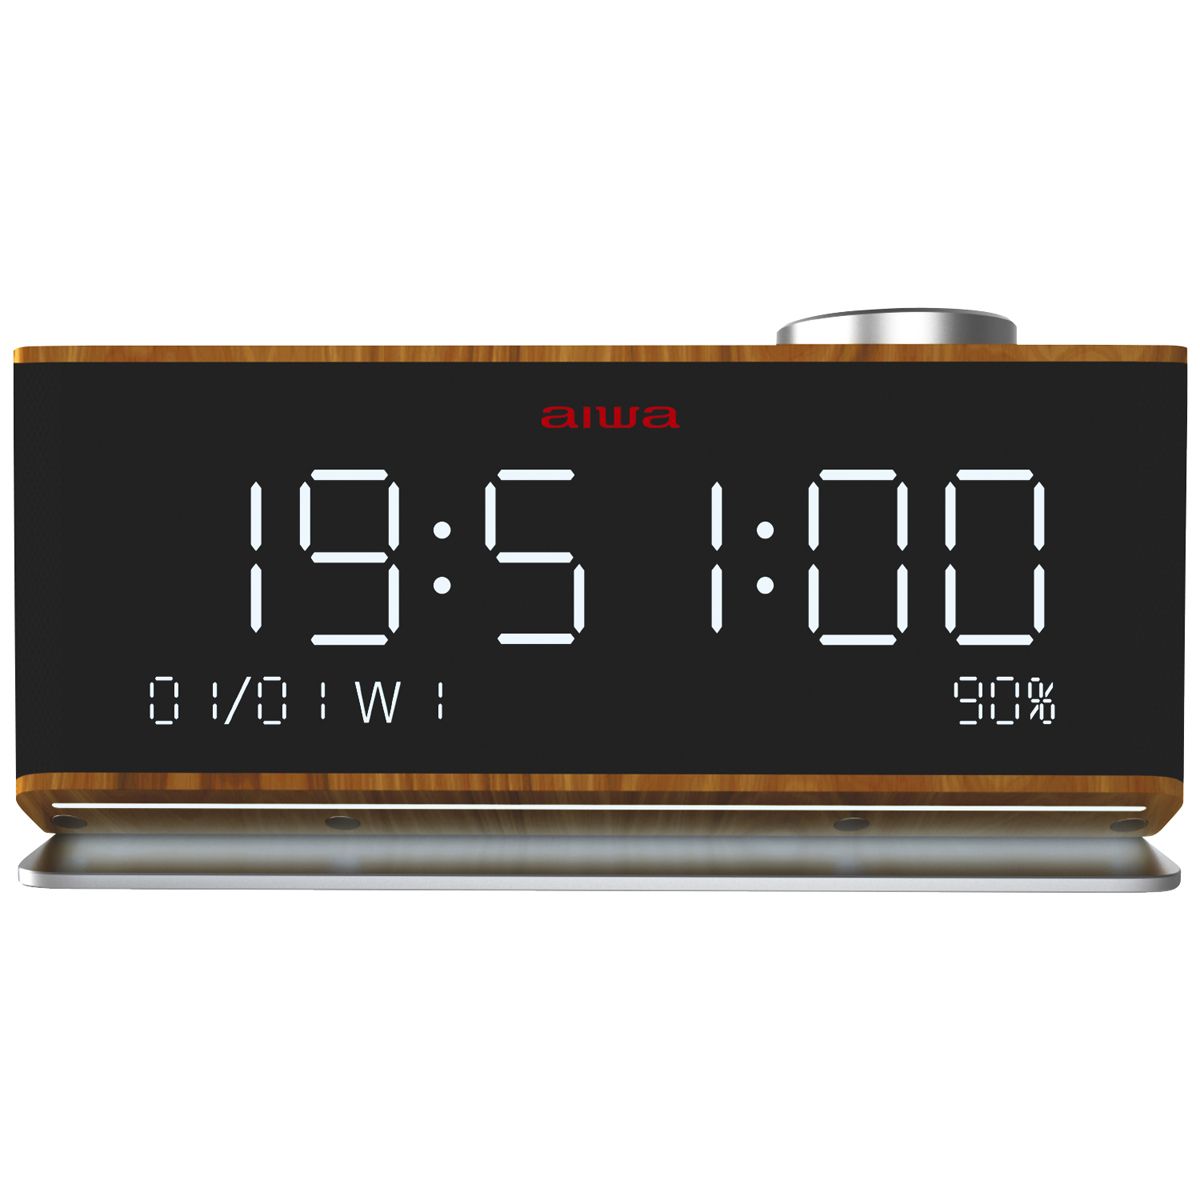 AIWA Clock Radio CR-90BT